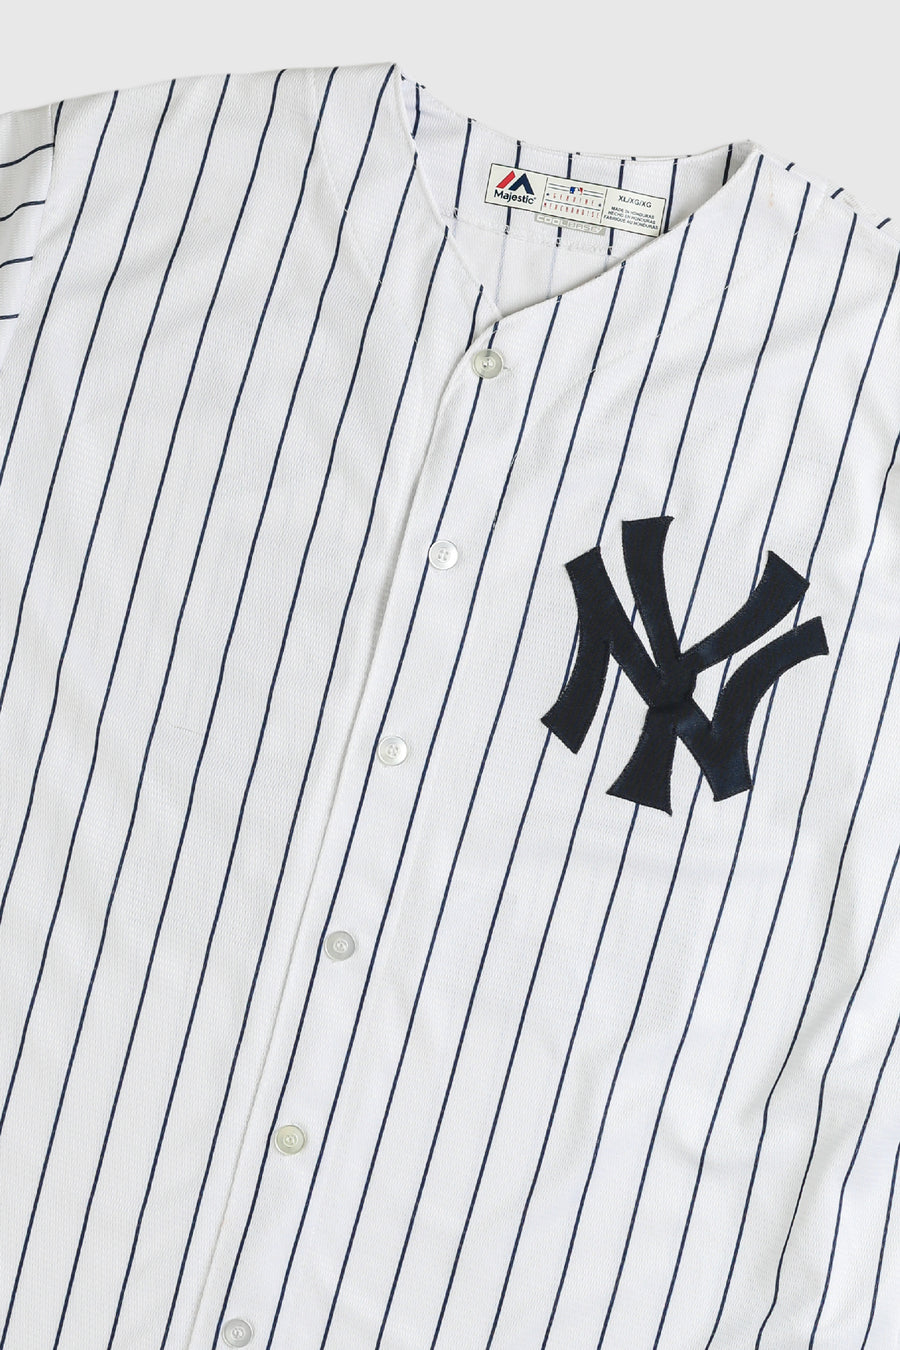 Vintage Yankees Jersey